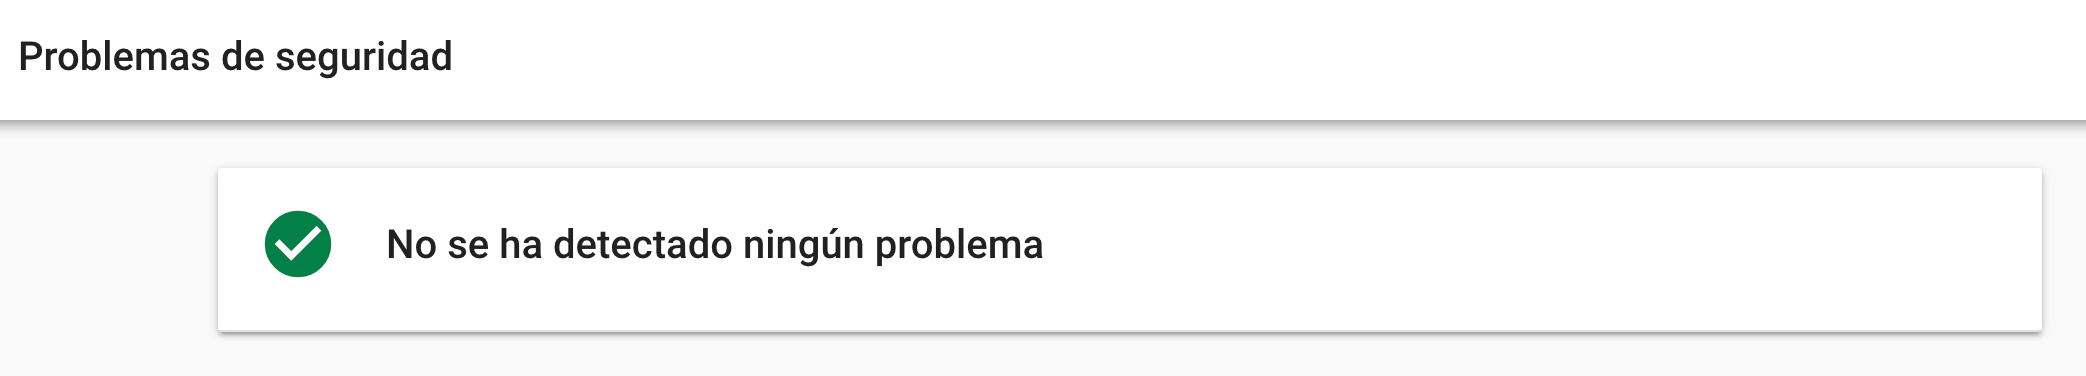 Google Search Console problemas de seguridad